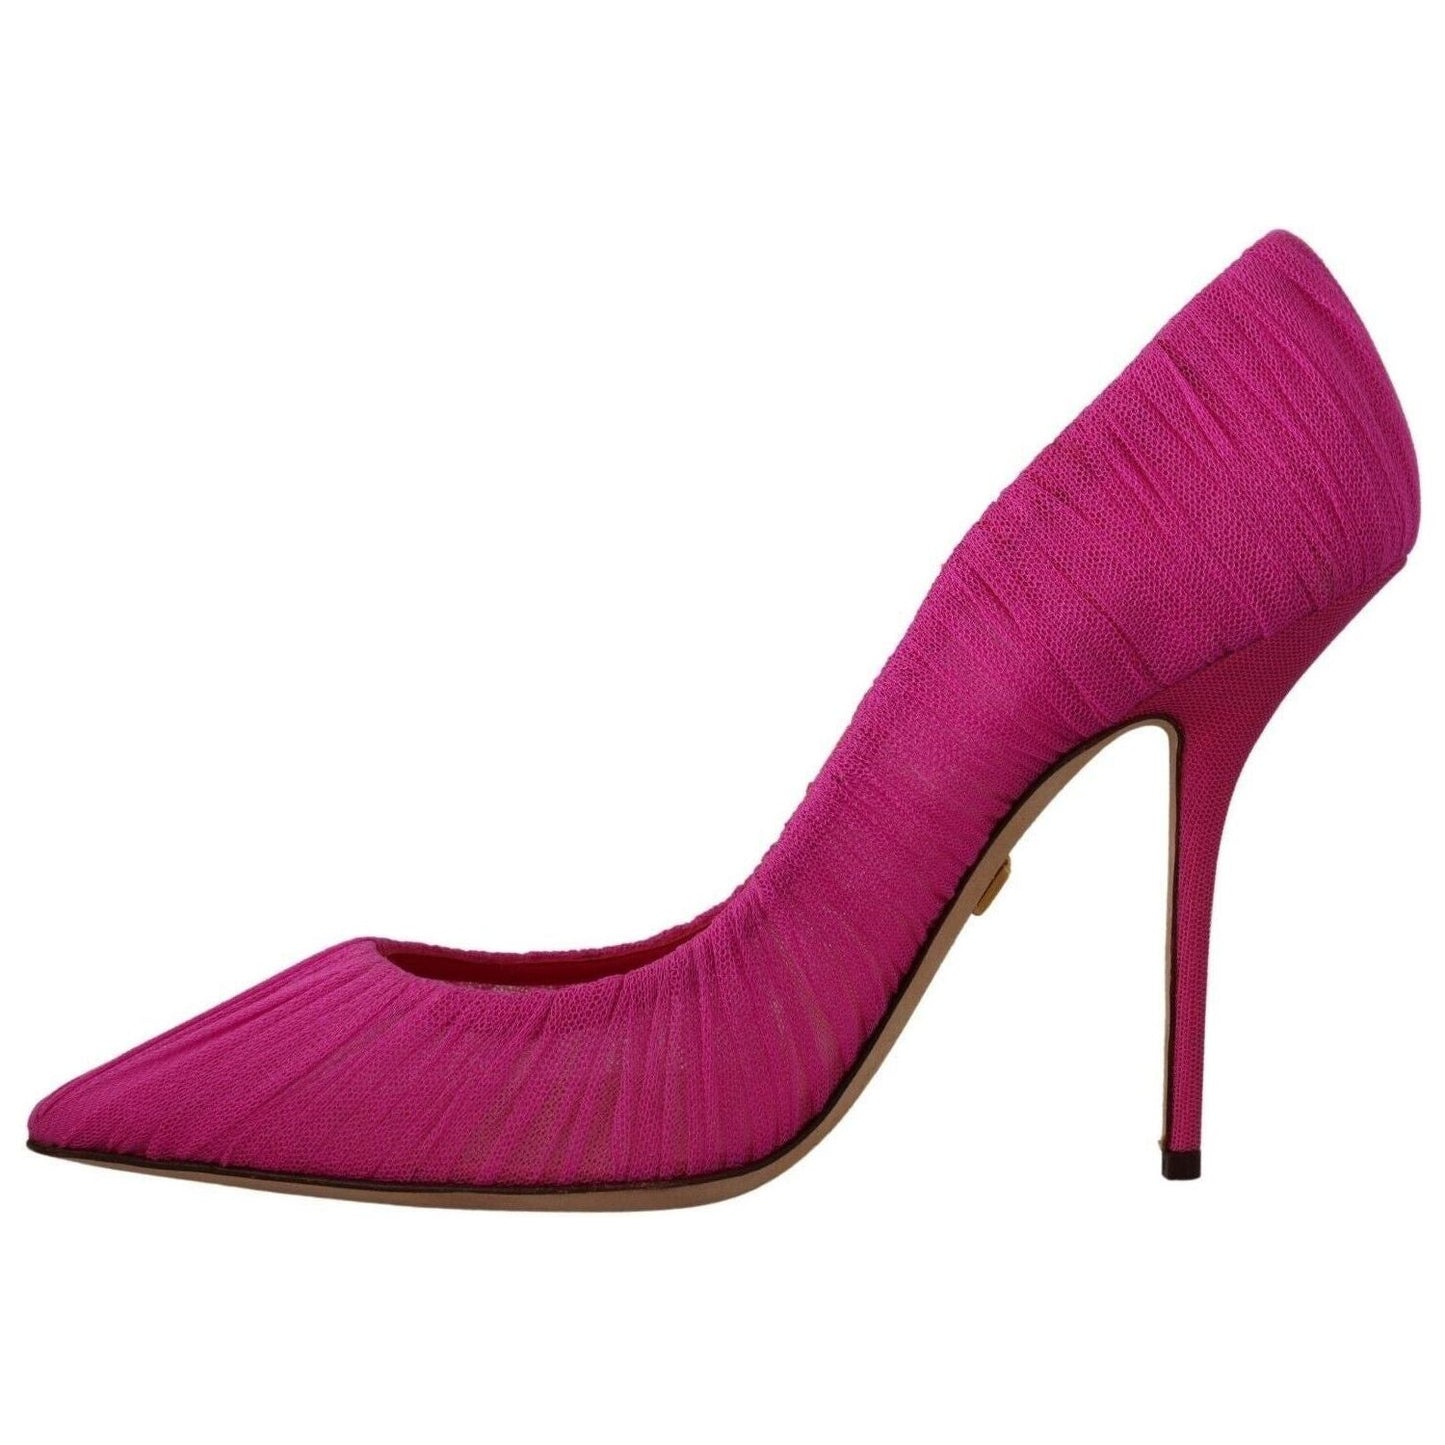 Dolce & Gabbana Elegant Pink Tulle Mesh Heels Pumps pink-tulle-stiletto-high-heels-pumps-shoes s-l1600-4-64-0e8b6af6-774.jpg